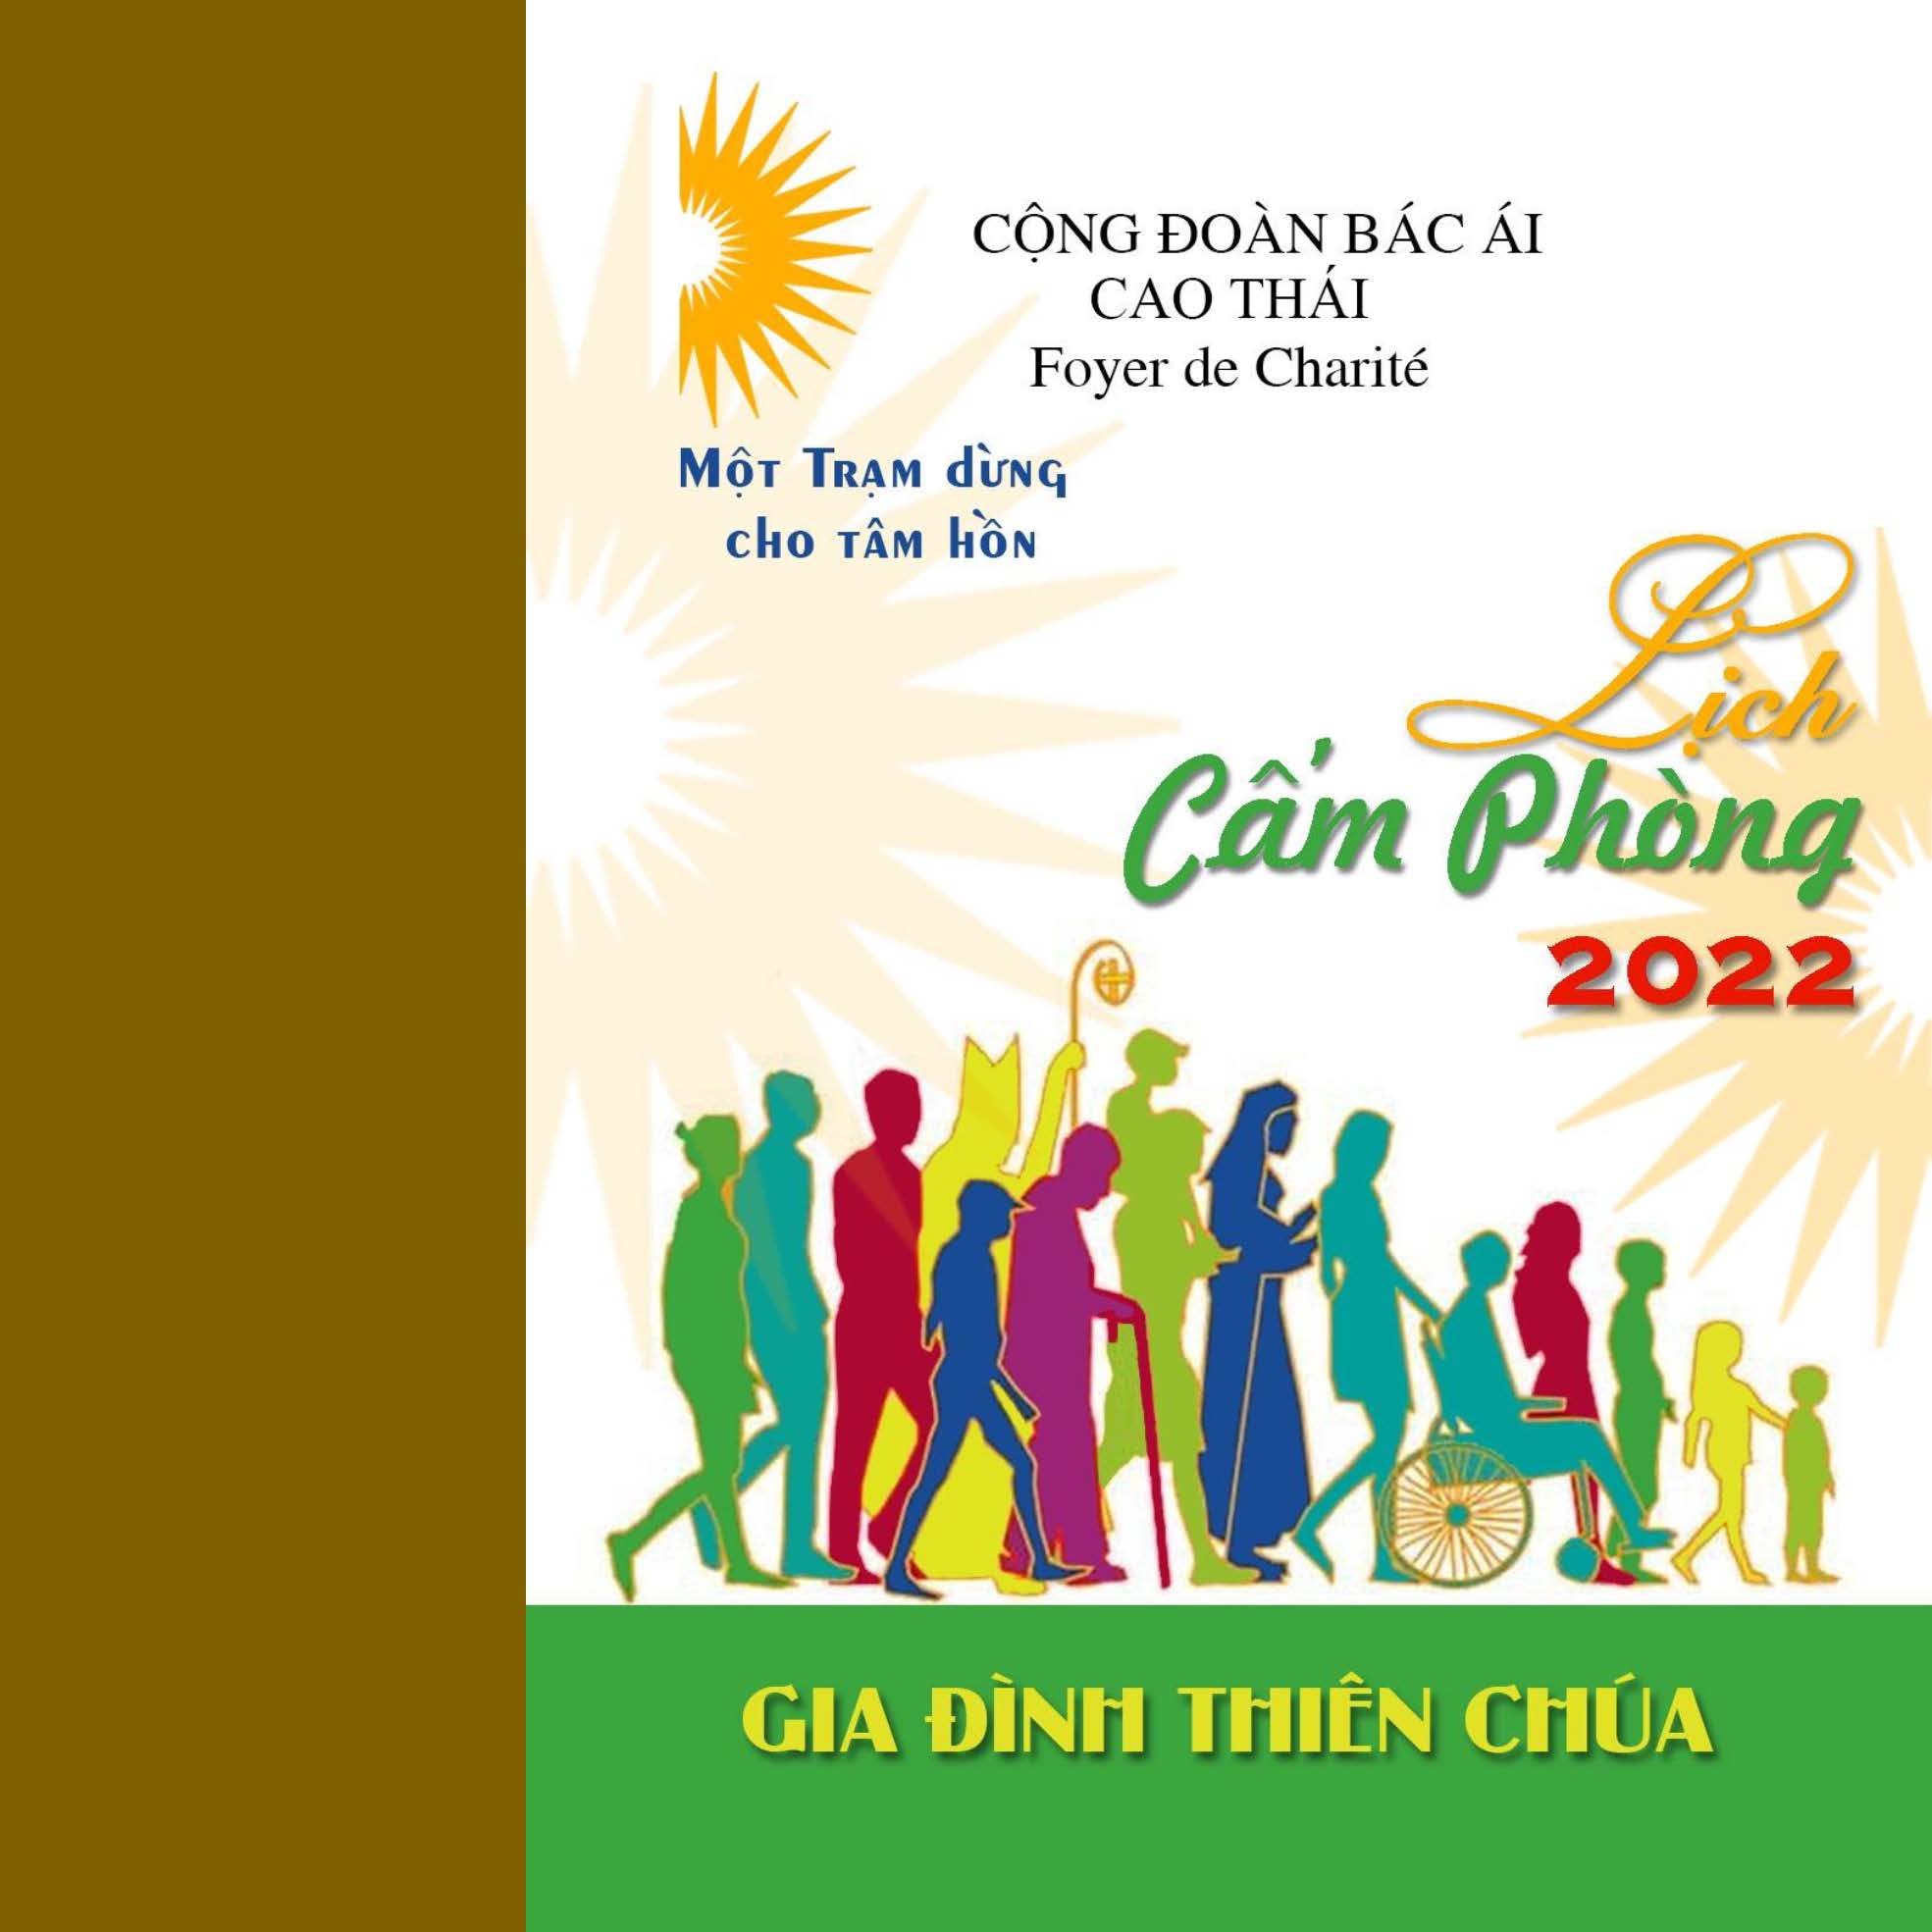 Cộng đoàn Bác ái Cao Thái: Lịch cấm phòng năm 2022